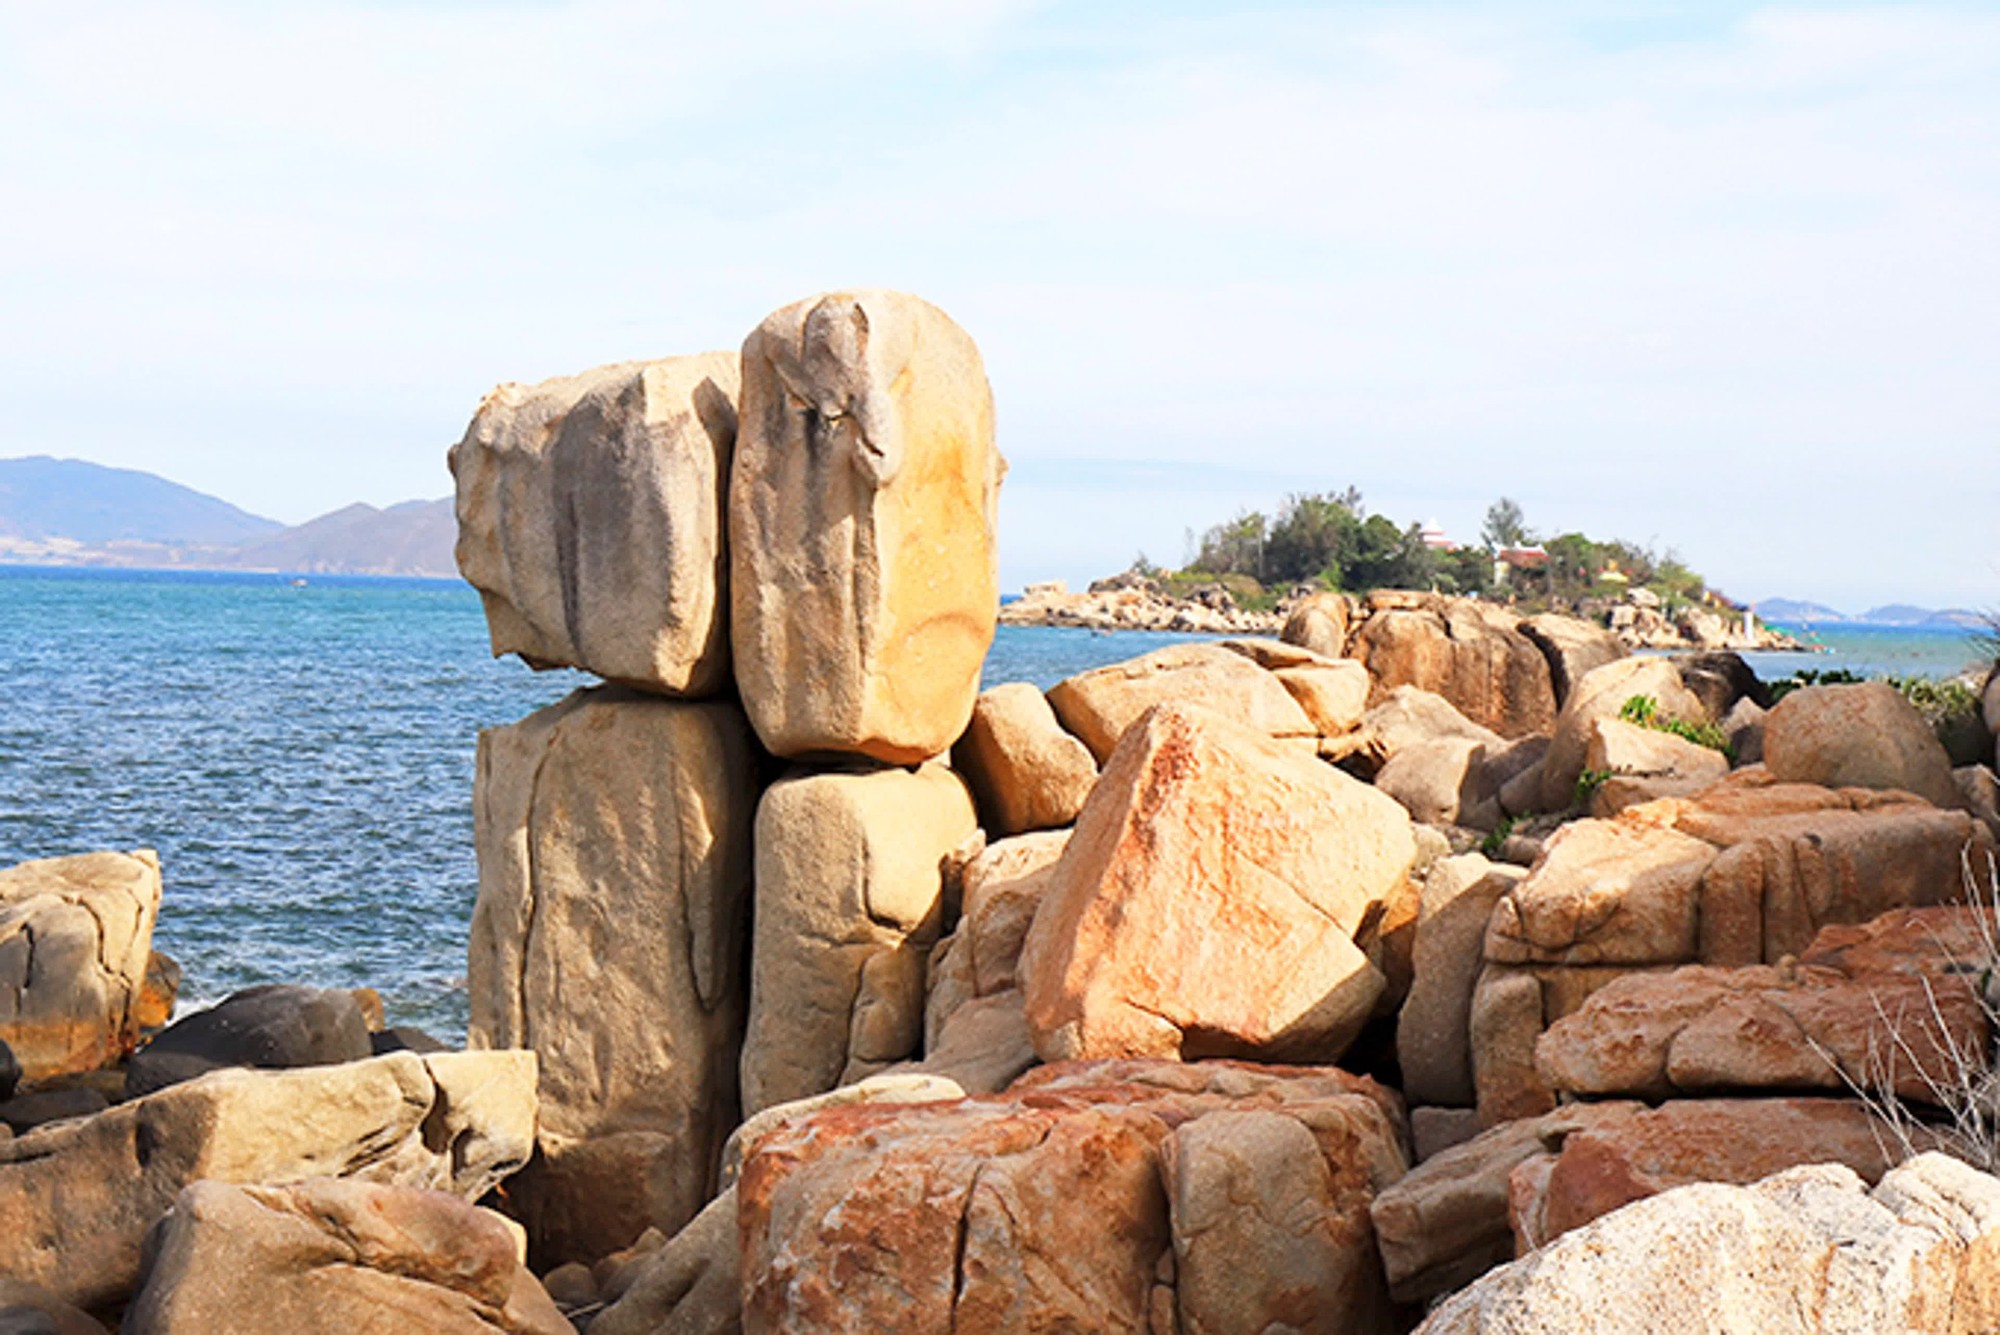 Phát hiện 2 bãi đá có tên gọi "theo cặp" ở Nha Trang, cách trung tâm chỉ 3km: Nhiều chuyện ly kỳ đằng sau- Ảnh 2.